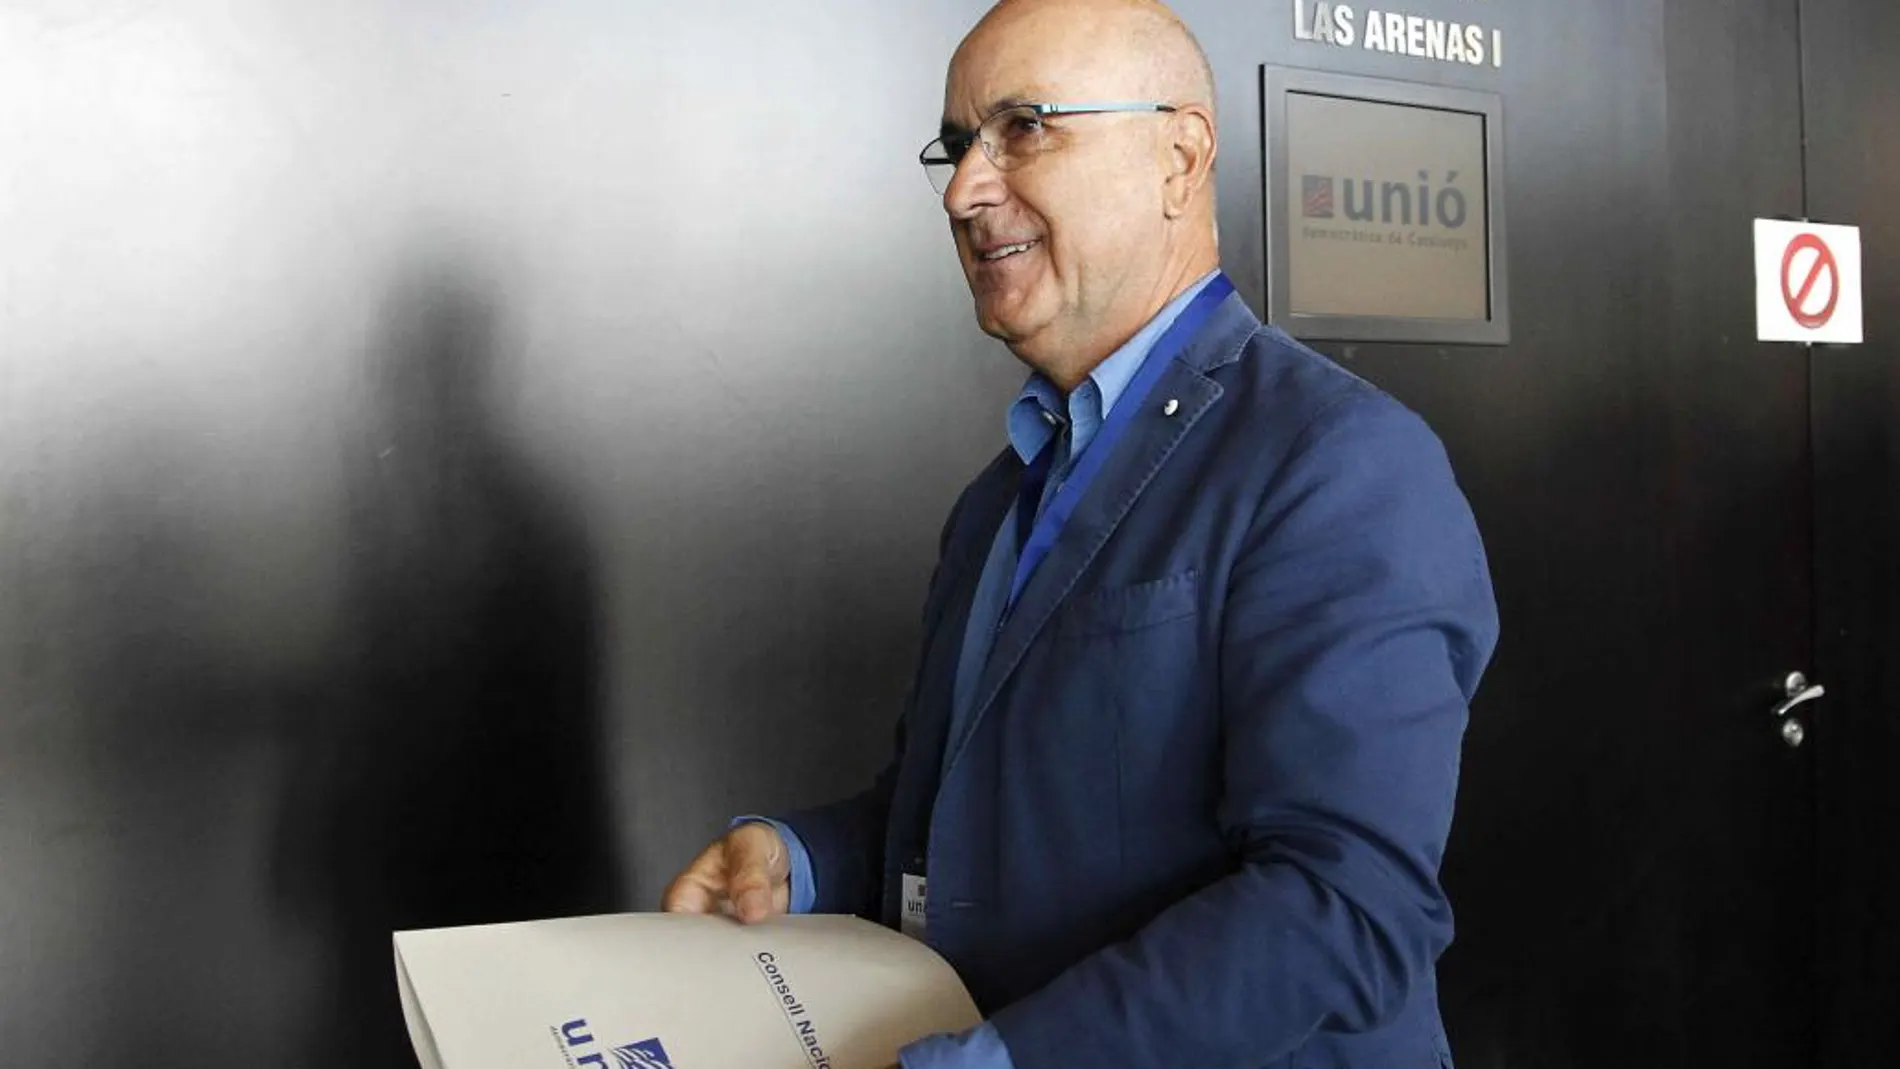 Josep Antoni Duran Lleida es uno de los firmantes del manifiesto contra el referéndum